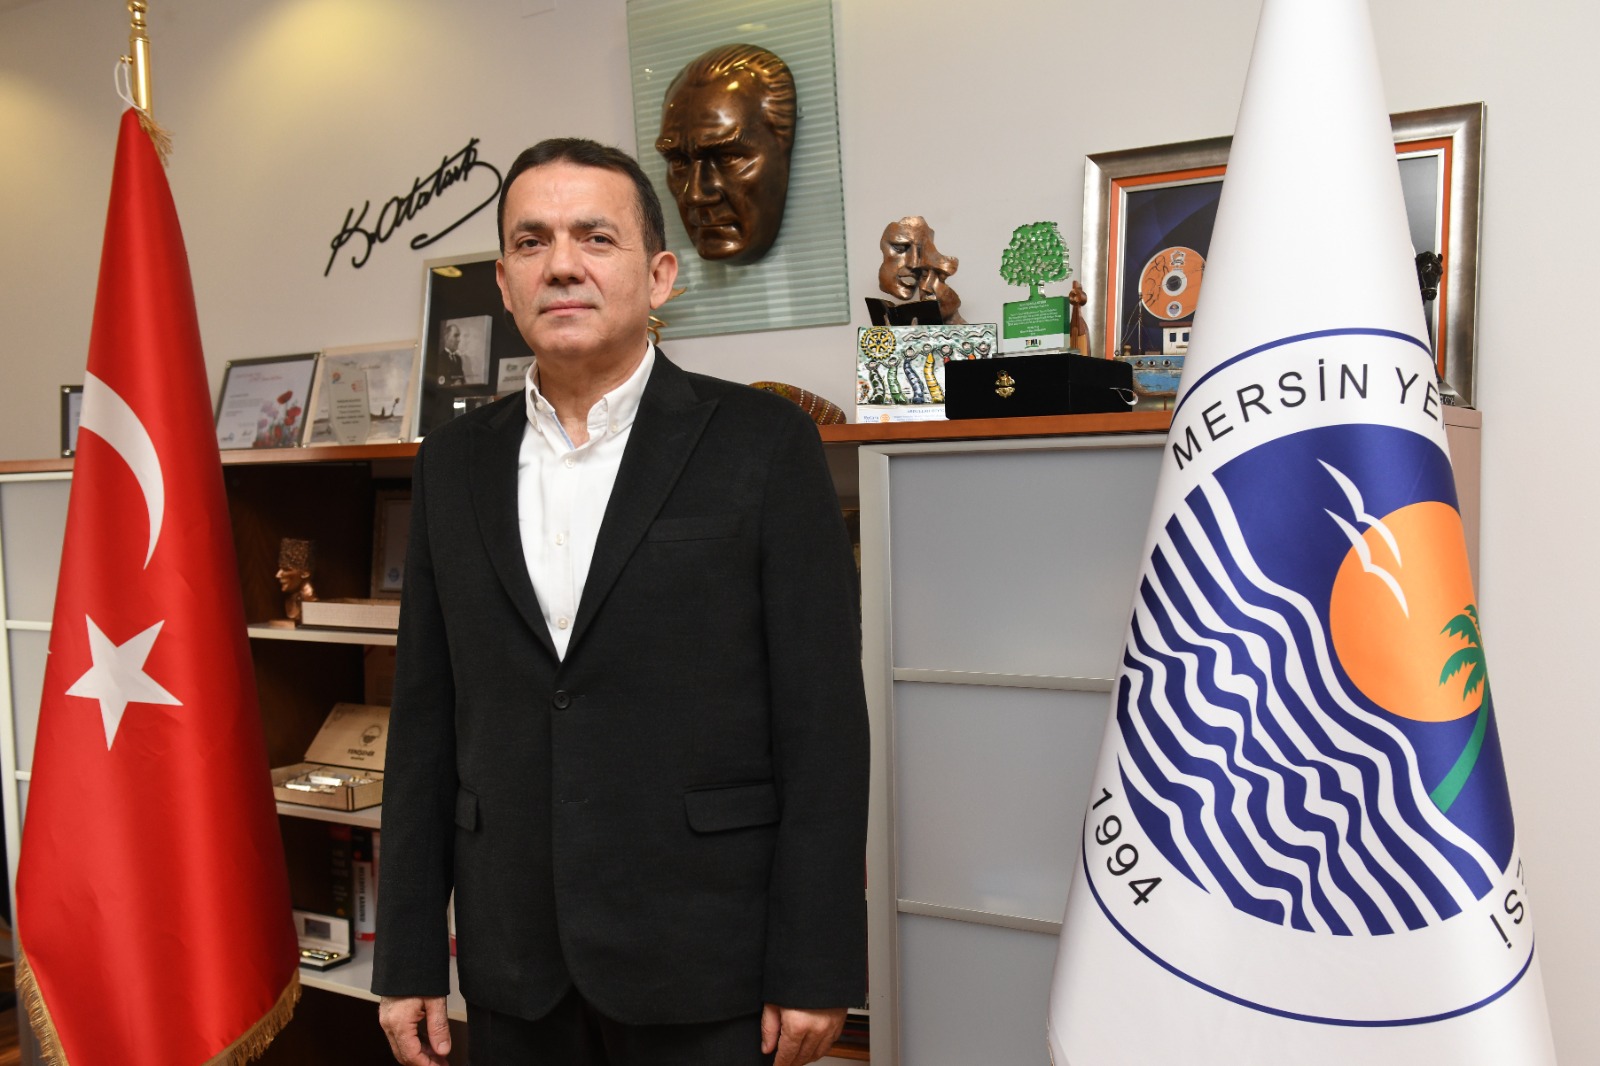 Başkan Özyiğit, 3 Ocak Mersin'in kurtuluş gününü kutladı.